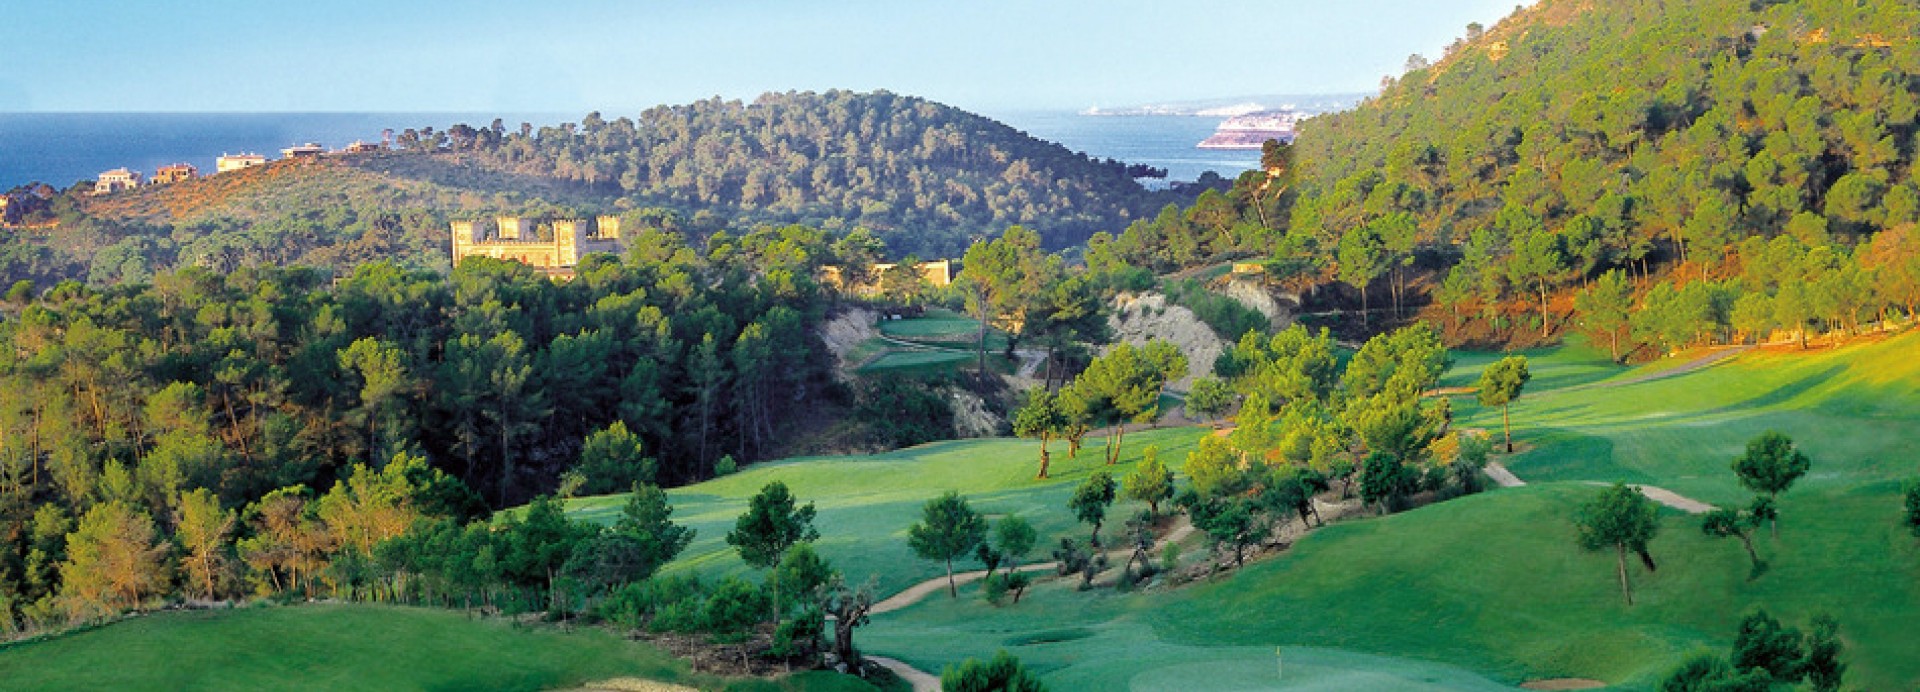 Real Golf de Bendinat  | Golfové zájezdy, golfová dovolená, luxusní golf